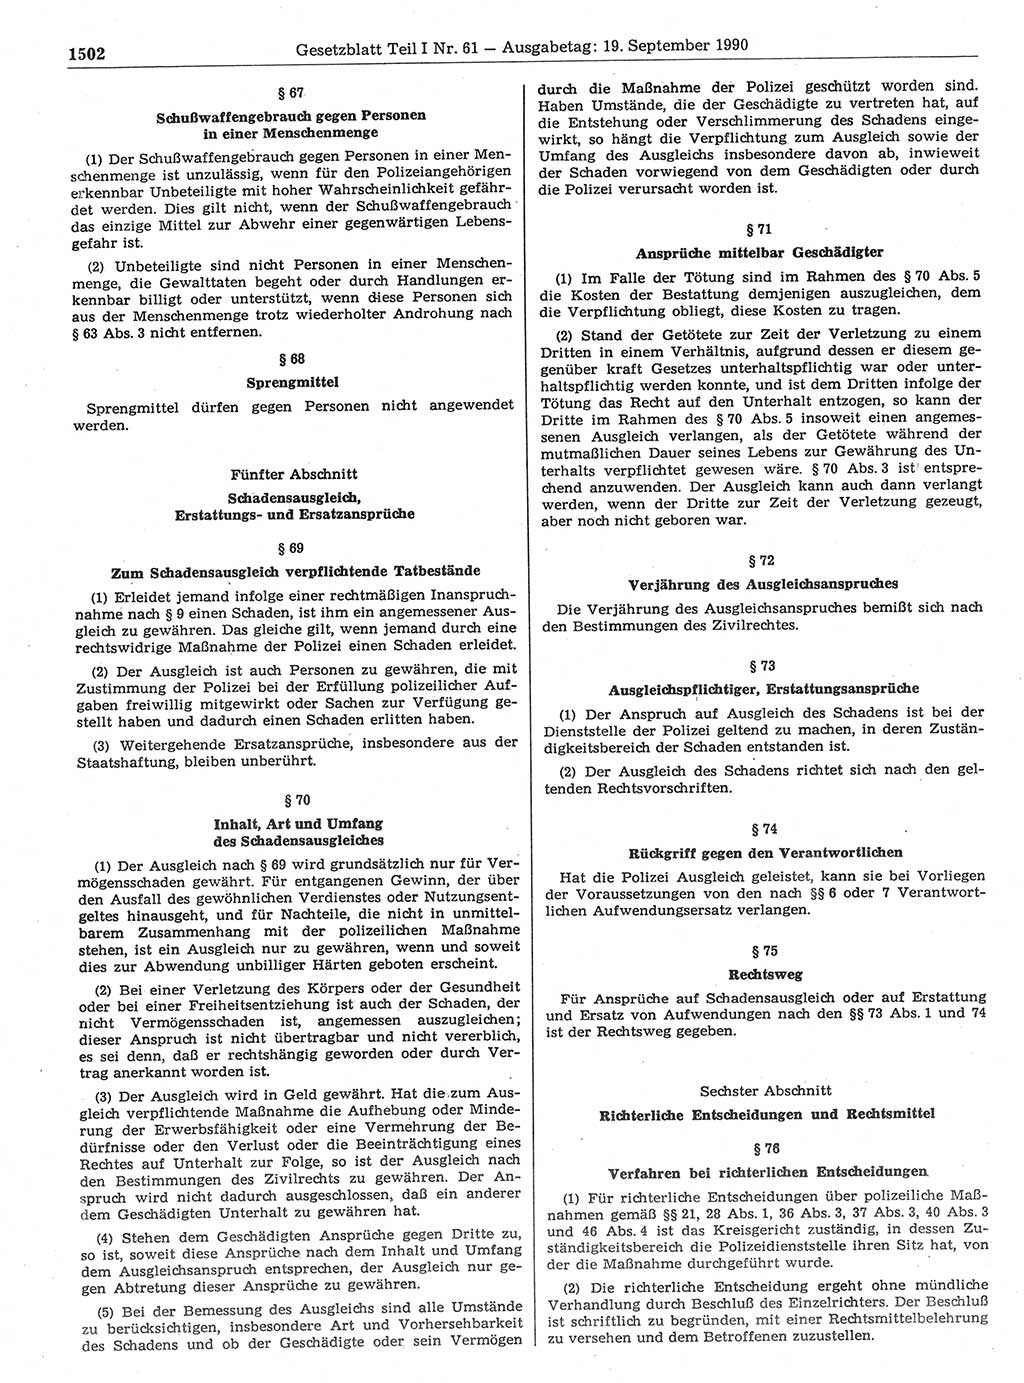 Gesetzblatt (GBl.) der Deutschen Demokratischen Republik (DDR) Teil Ⅰ 1990, Seite 1502 (GBl. DDR Ⅰ 1990, S. 1502)